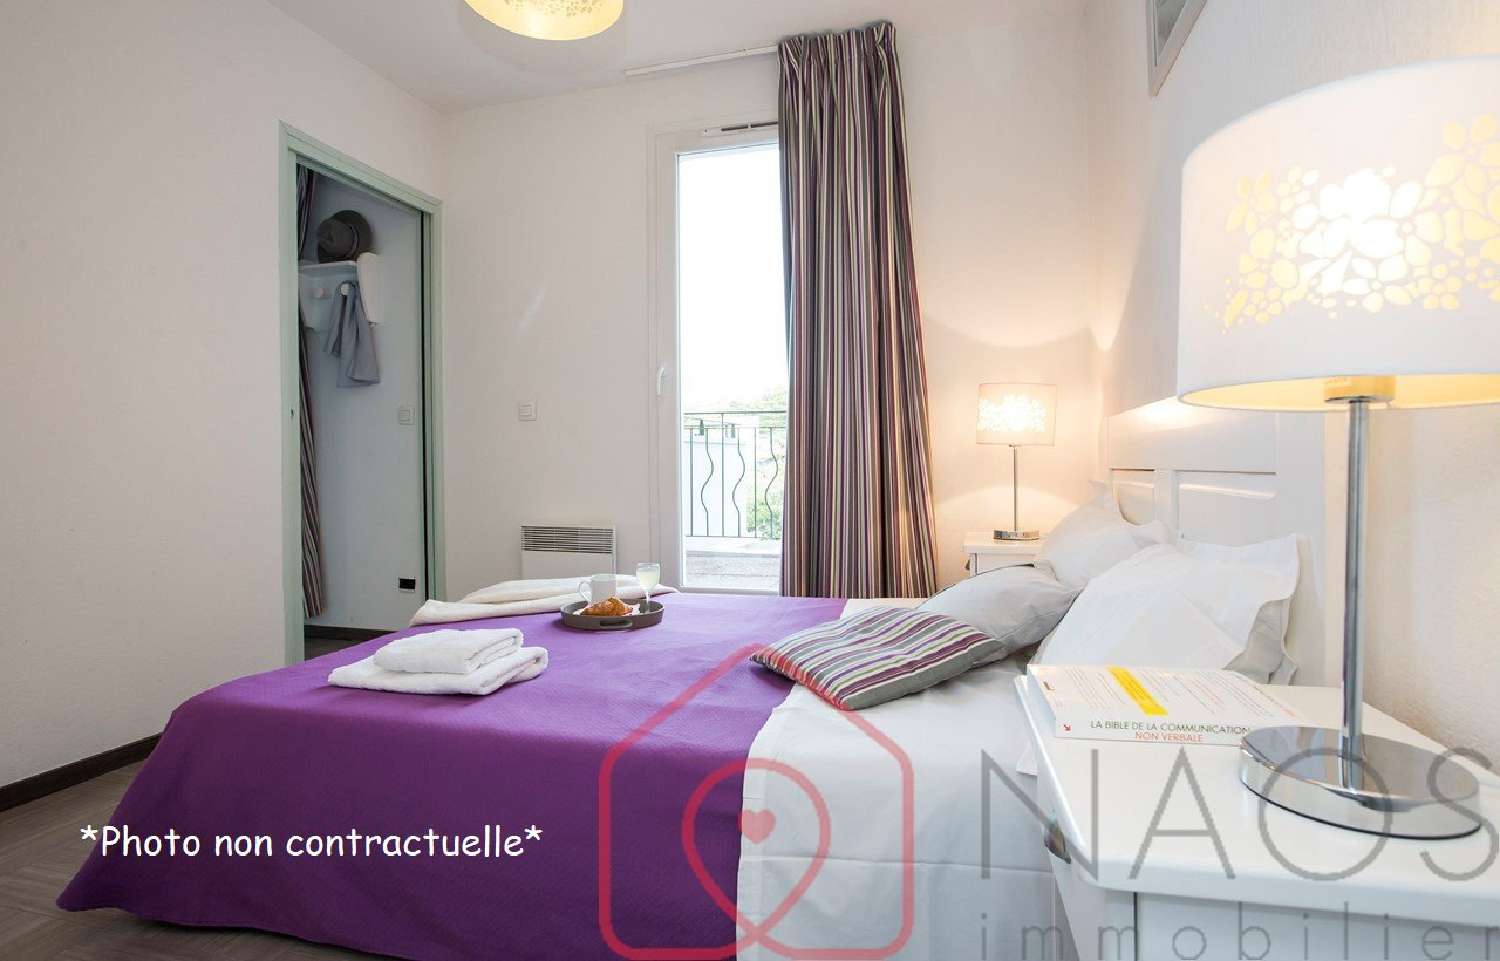  à vendre appartement Gréoux-les-Bains Alpes-de-Haute-Provence 3